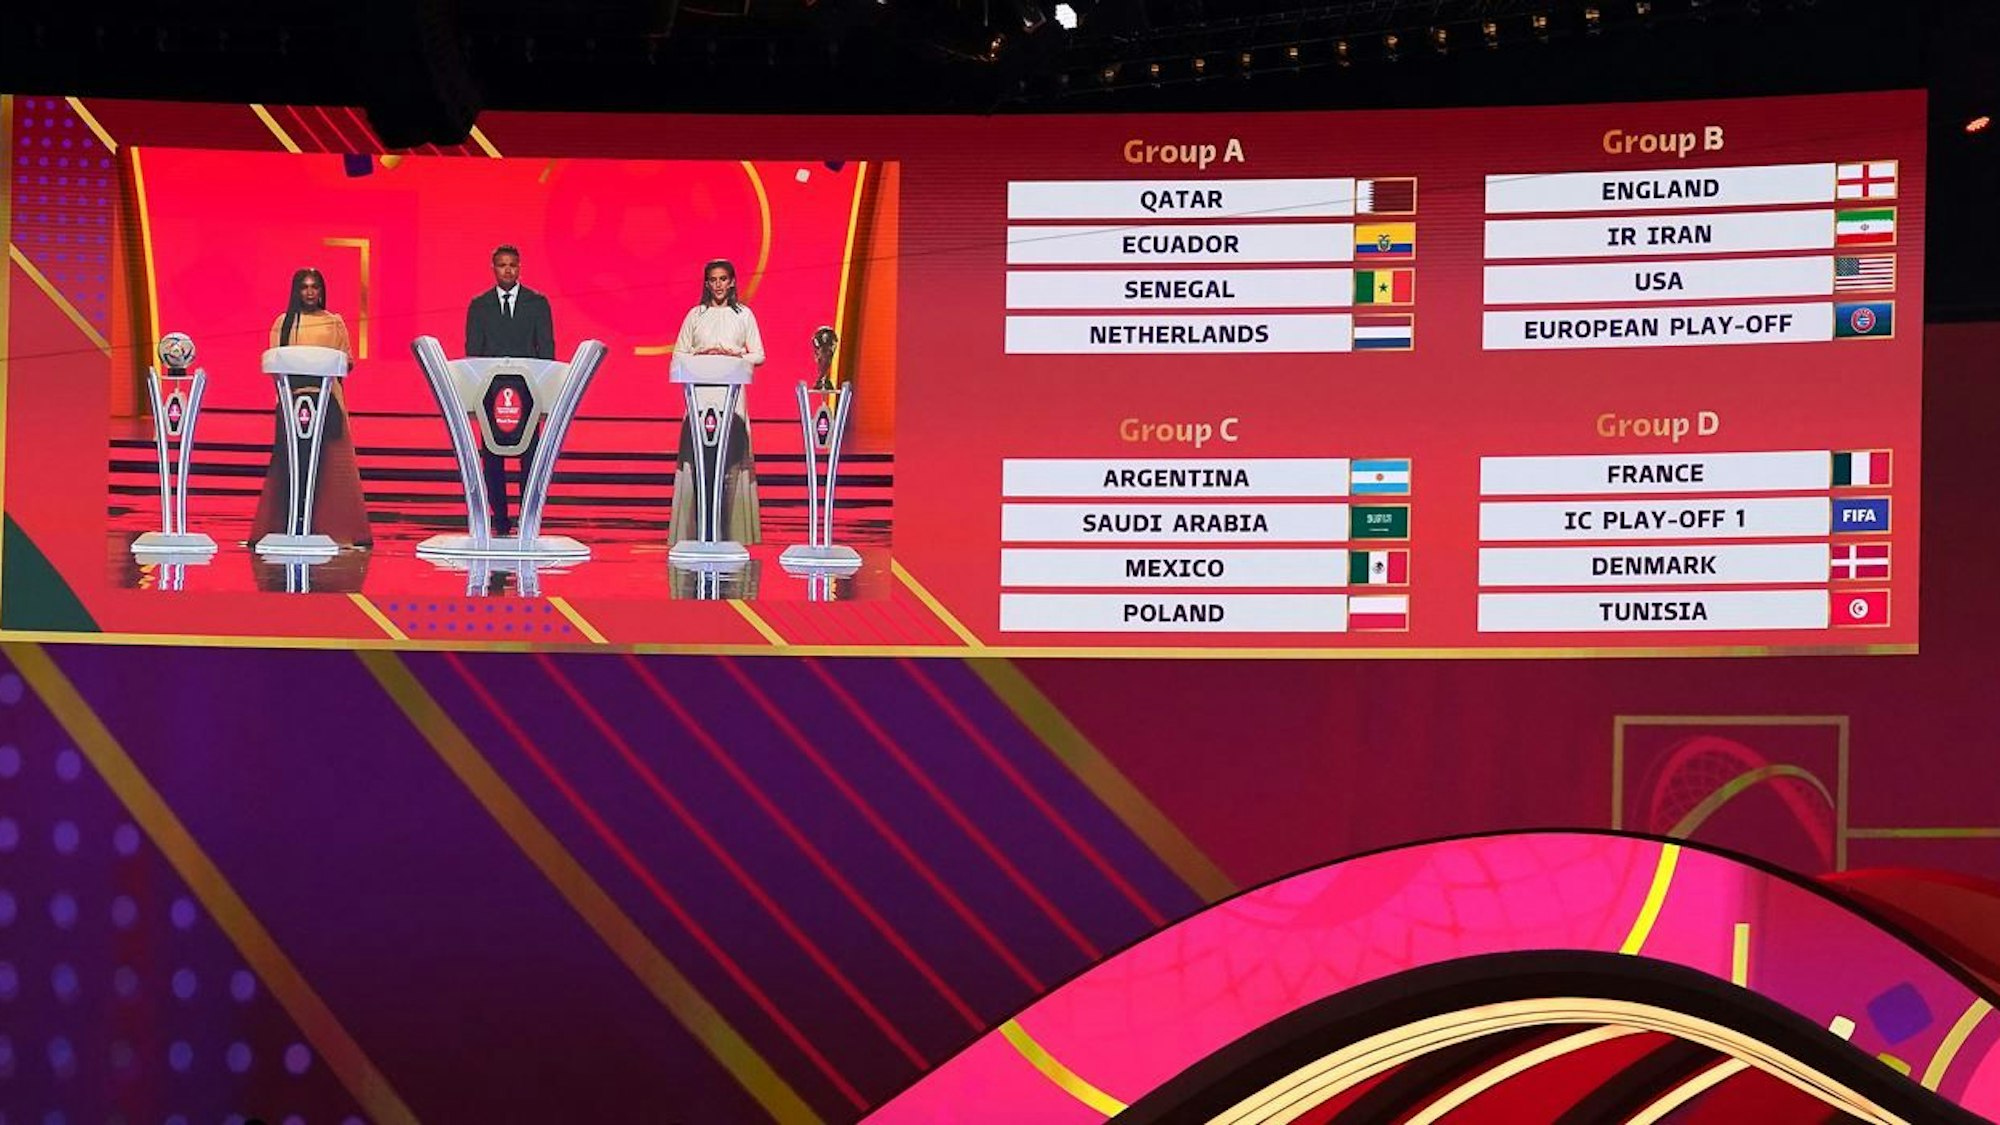 WM-Auslosung der Vorrunde in Doha. Die Auslosungsleiter Sam Johnson, Jermaine Jenas und Carli Lloyd sind auf einer Anzeige neben den Gruppen A,B,C und D zu sehen.
